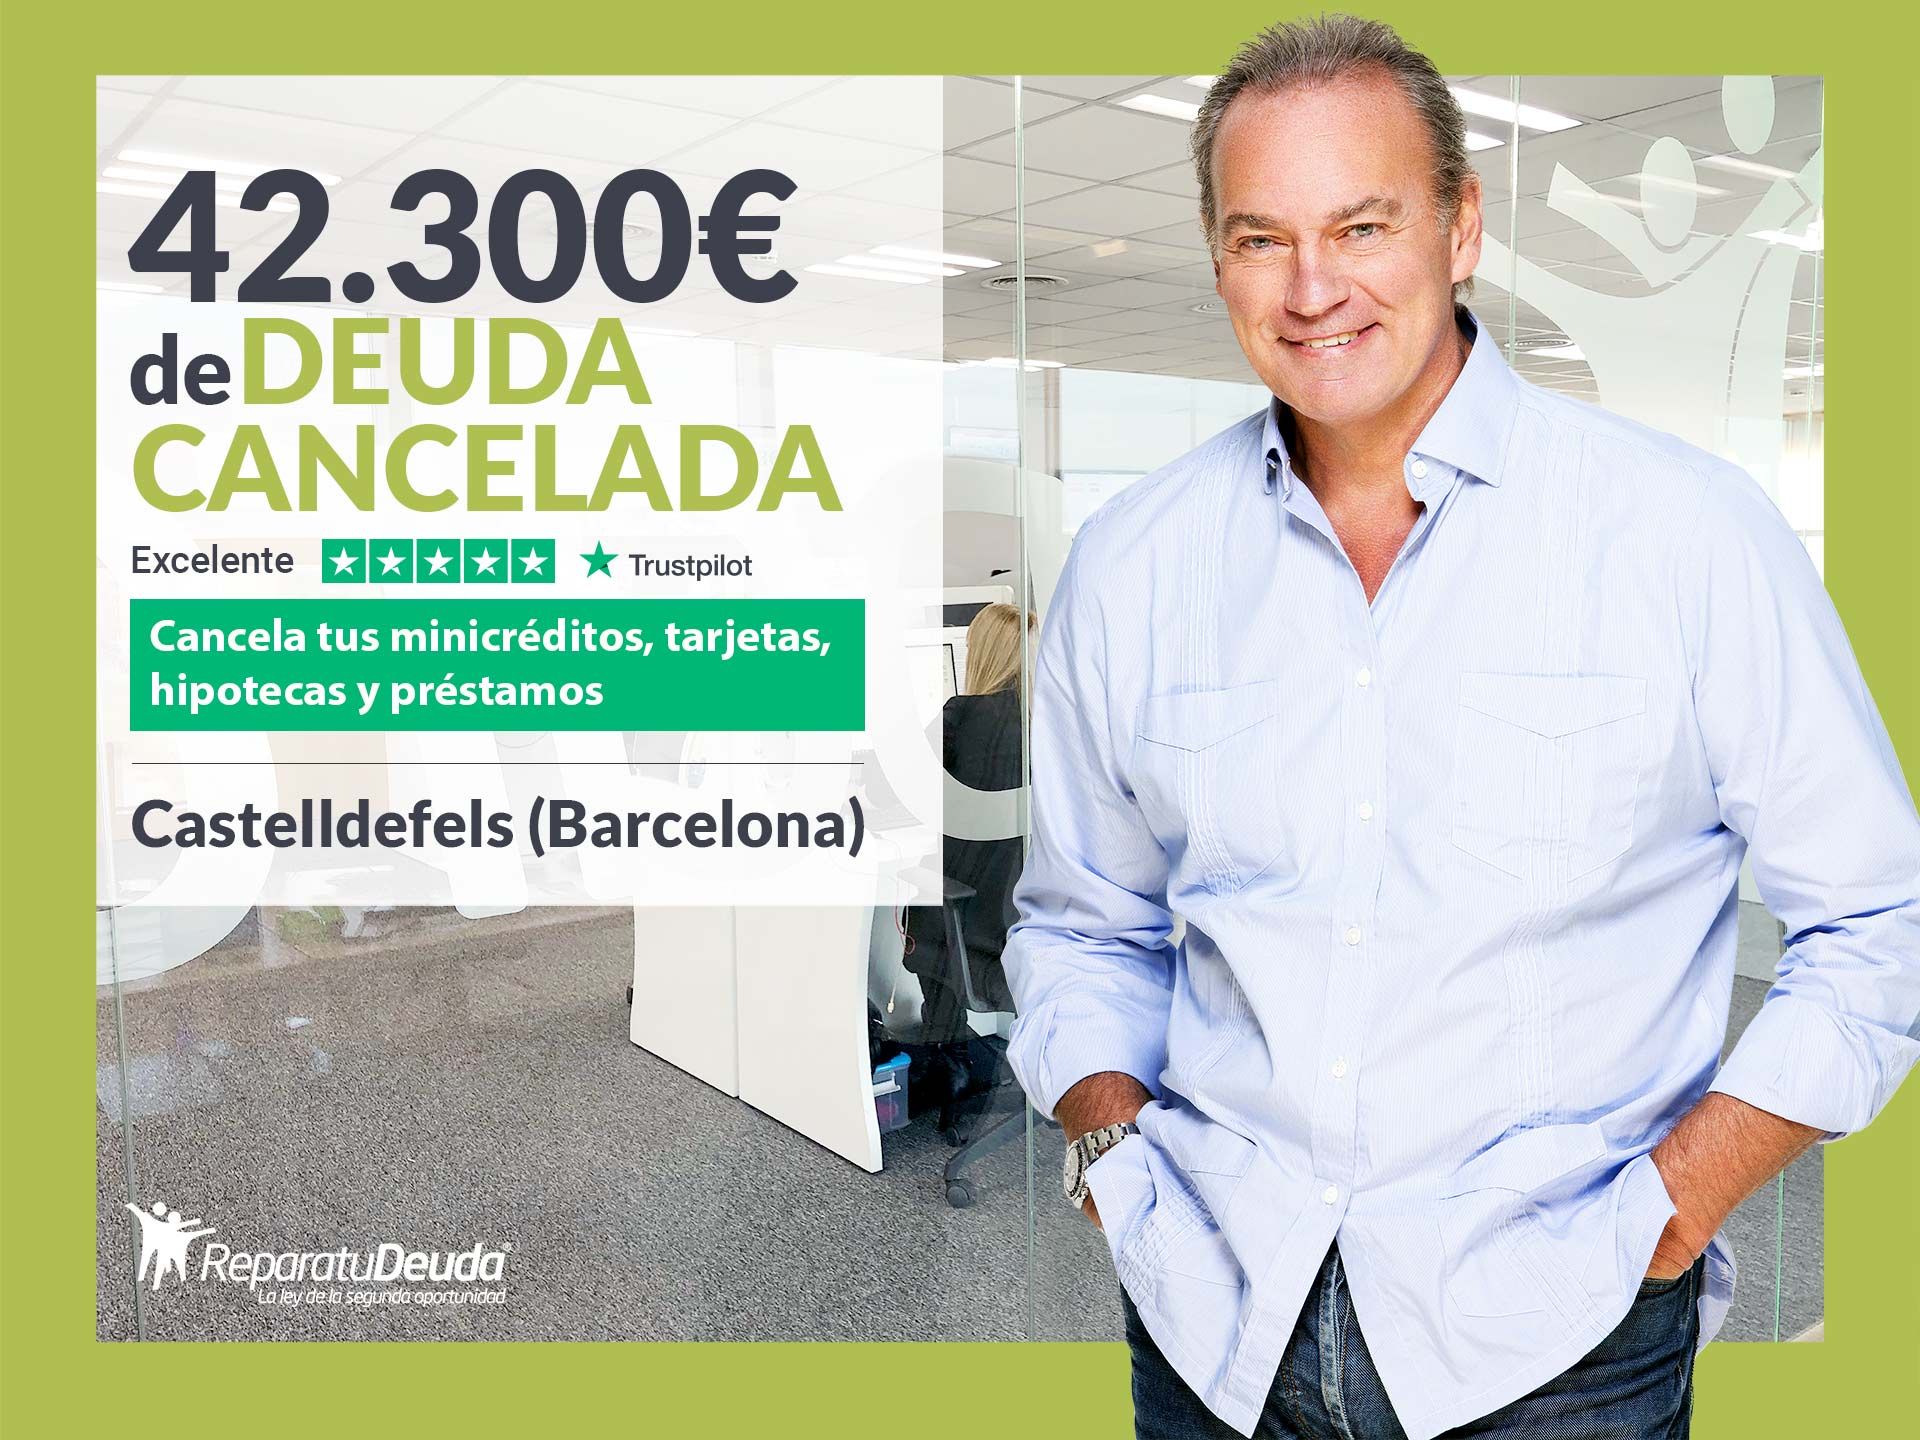 Repara tu Deuda Abogados cancela 42.300? en Castelldefels (Barcelona) con la Ley de Segunda Oportunidad